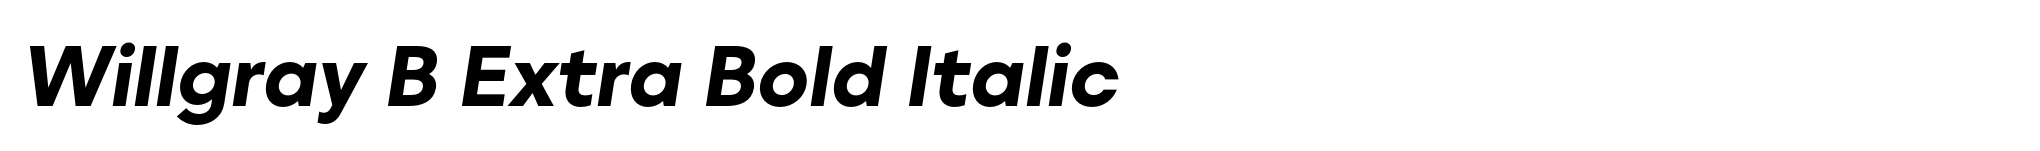 Willgray B Extra Bold Italic image